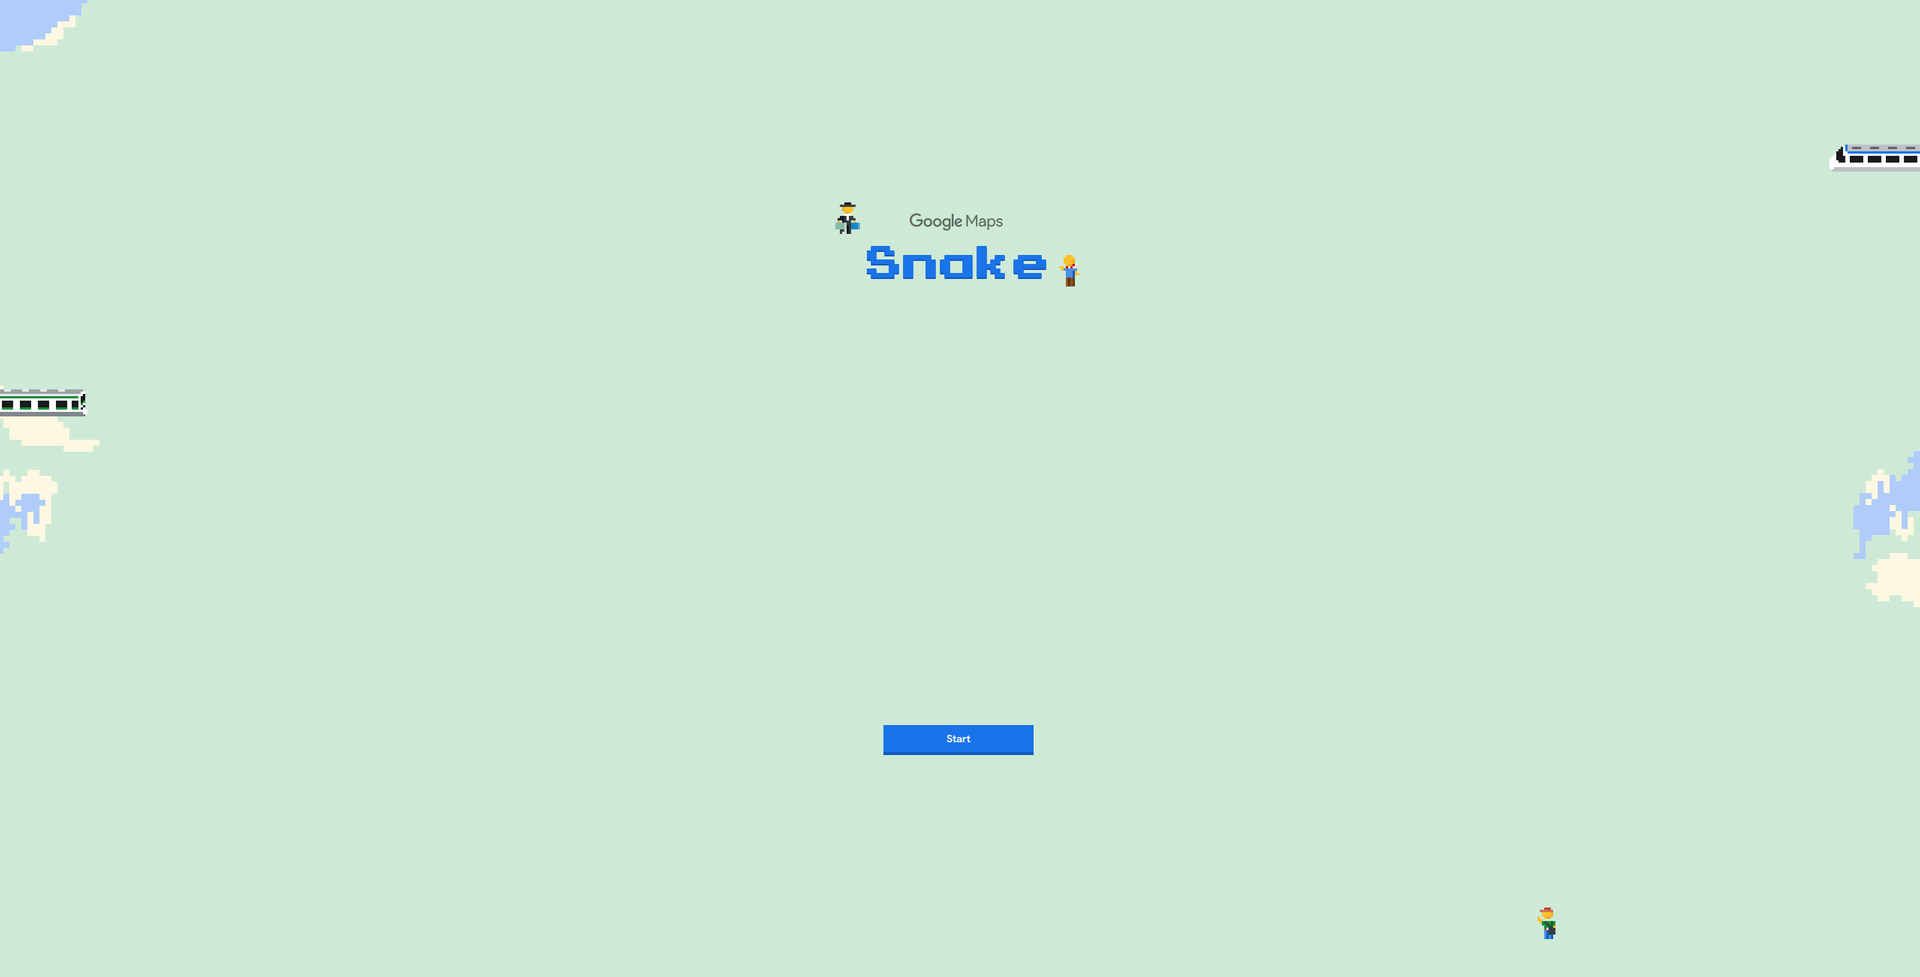 Snake war ein beliebtes Spiel auf Nokia Handys. Google Maps hat seine eigene Version daraus gemacht. Welche Easter Eggs der Kartendienst ansonsten bereithält, sehen Sie in der Fotoshow.